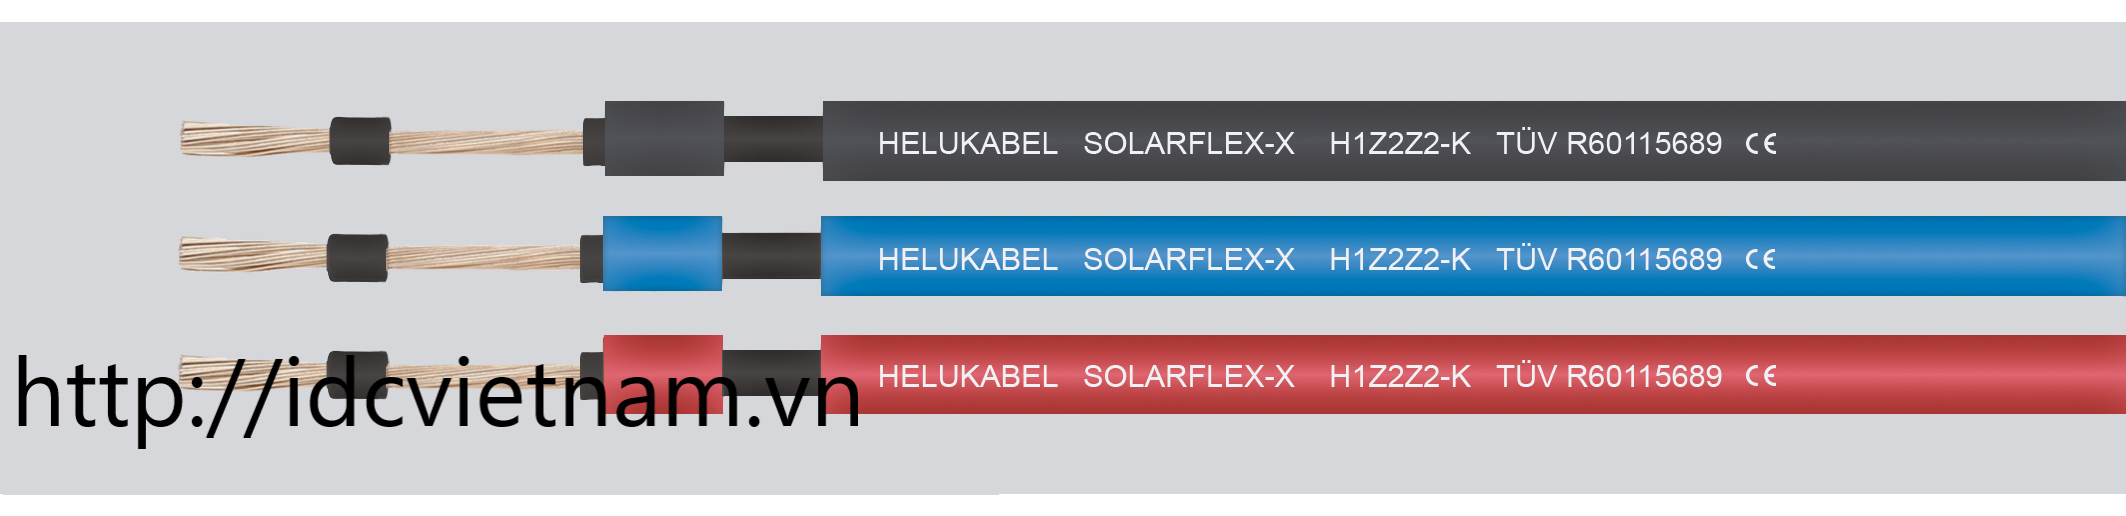 Helukabel SOLARFLEX-X H1Z2Z2-K 1x10 mm² BU (713572)